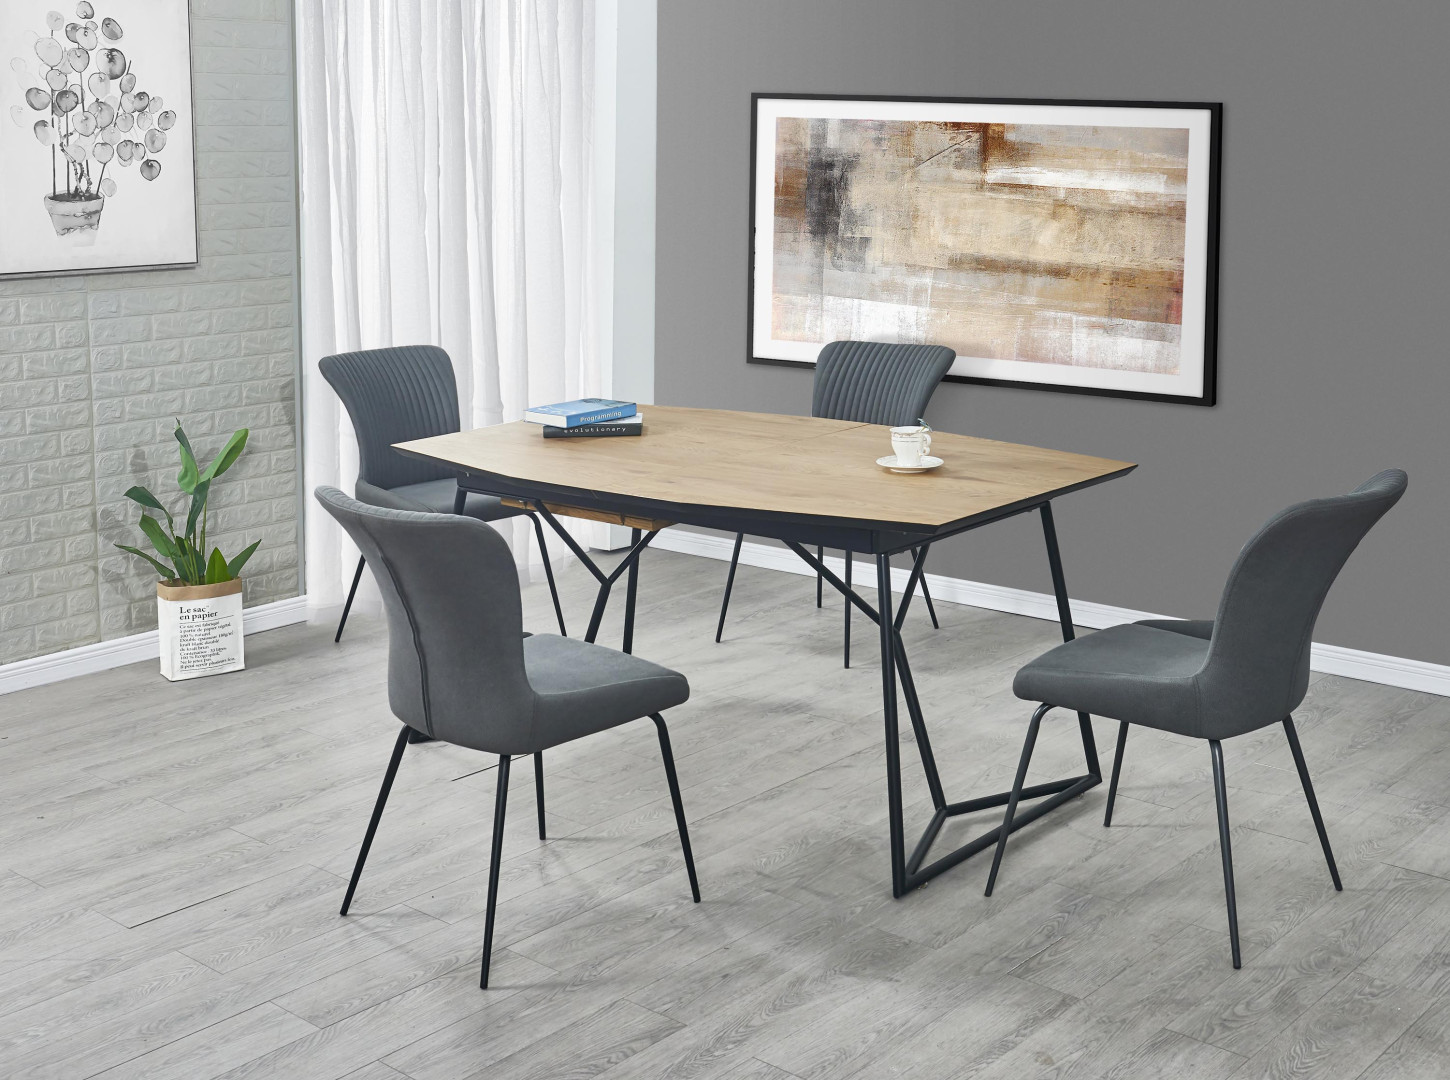 Stół biurkowy COLOMBO elegancja i funkcjonalność